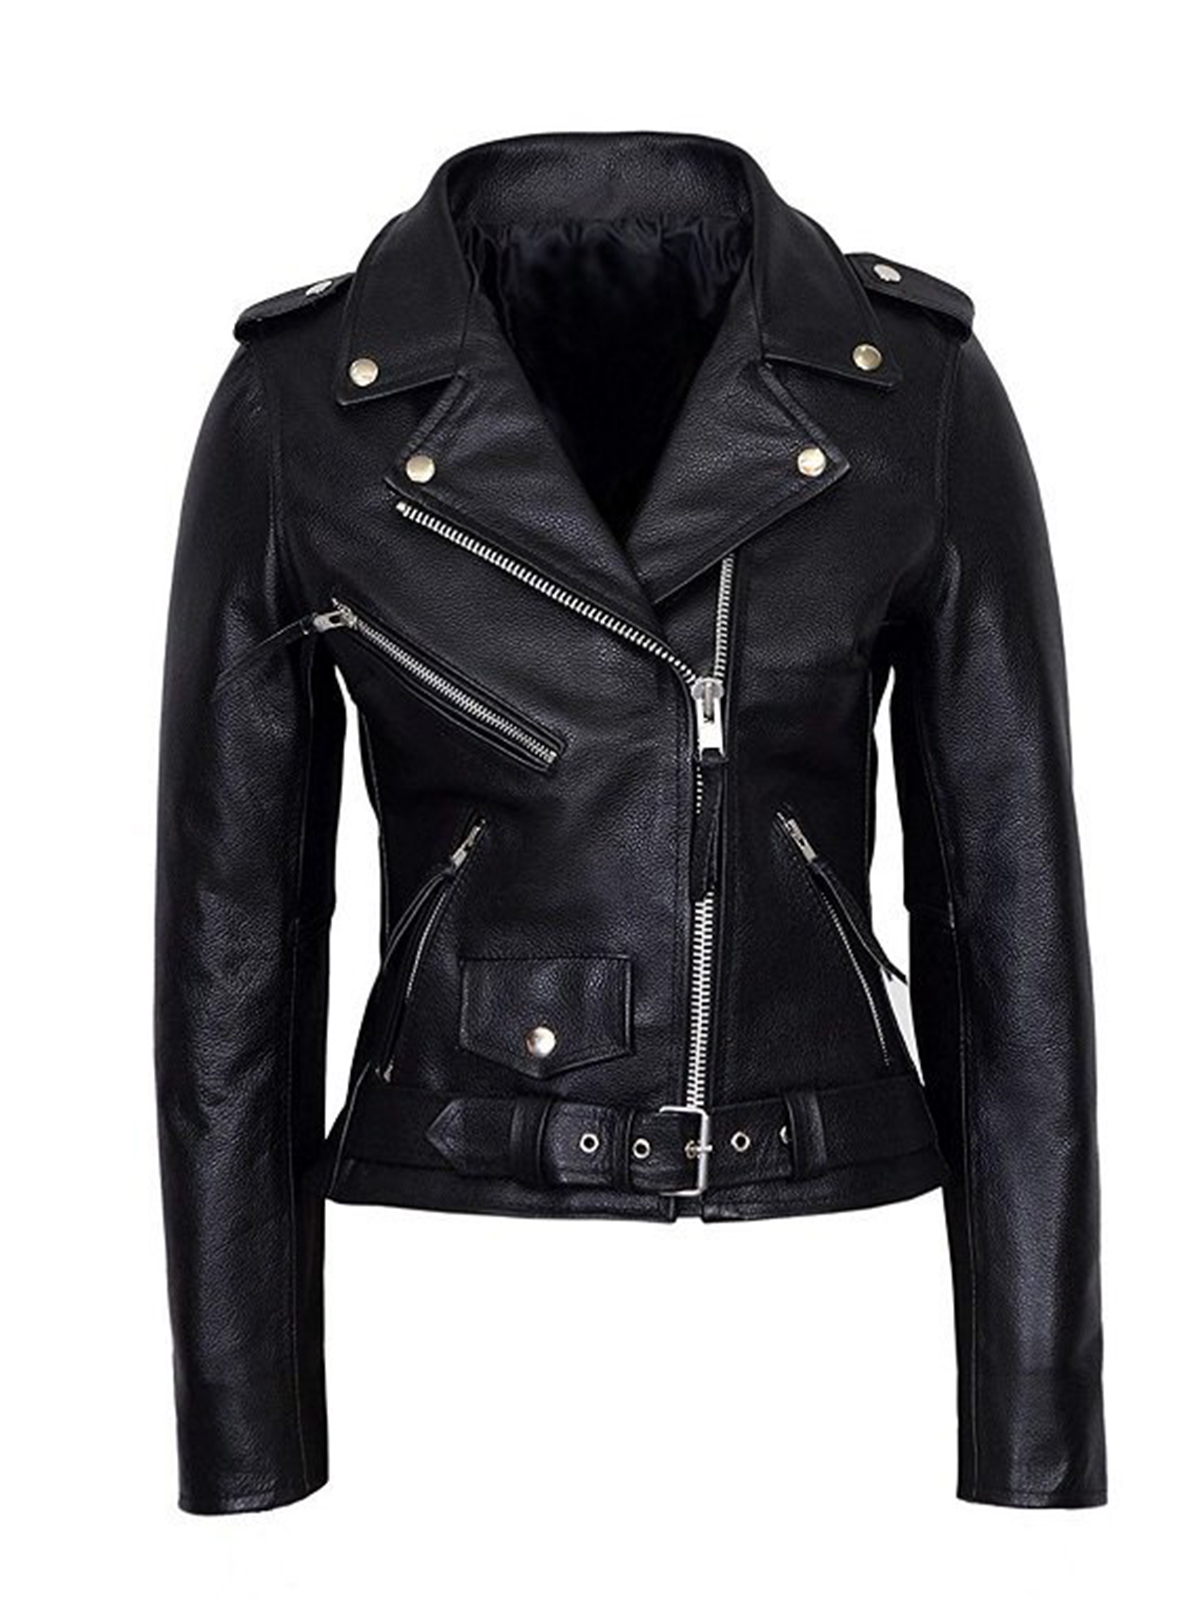 Maryse Mizanin Motorcycle Leather Jacket